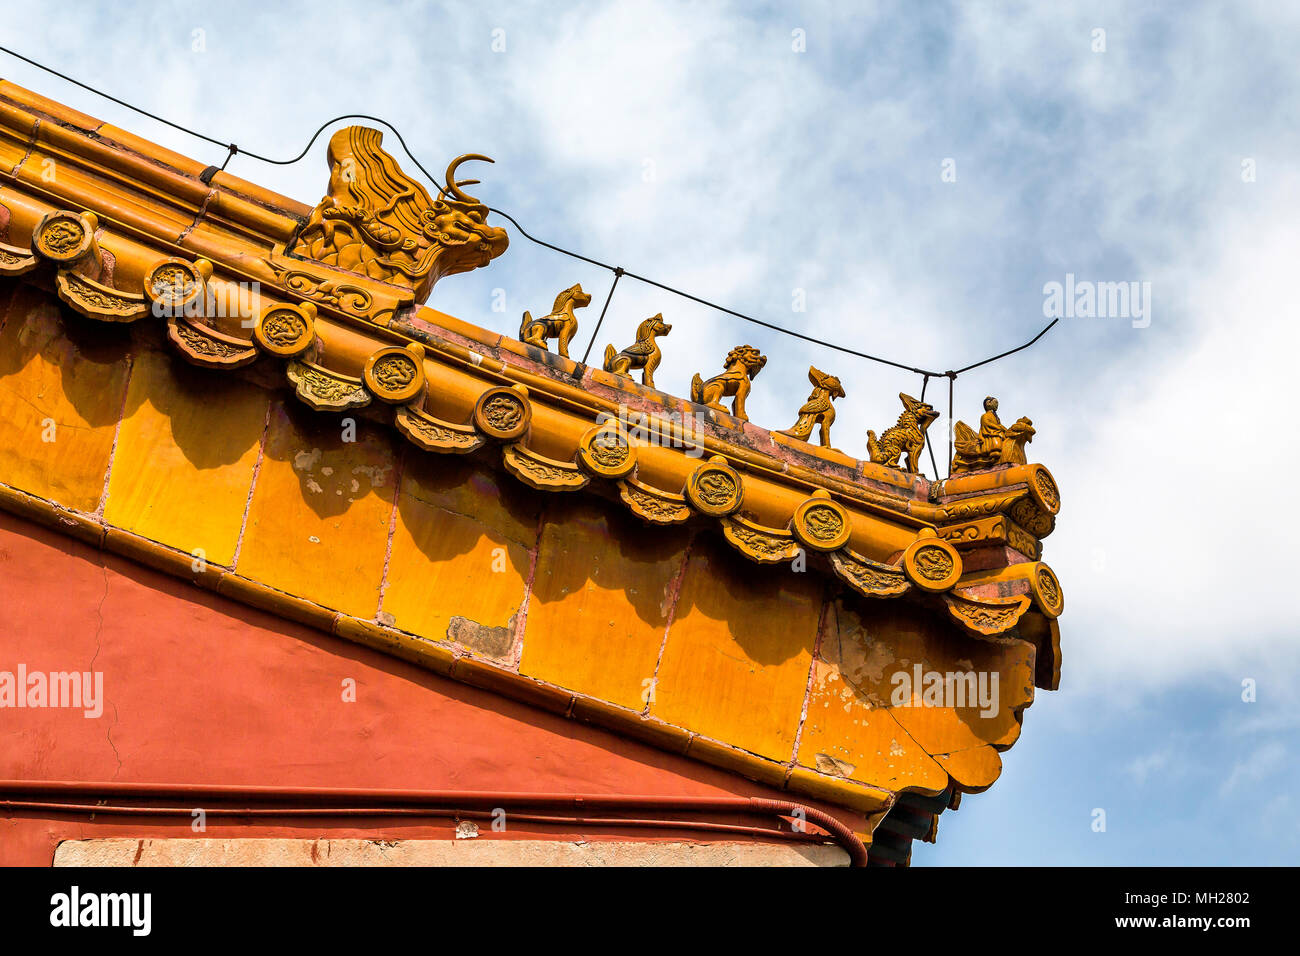 Dettaglio della imperiale cinese decorazioni sul tetto o il fascino del tetto sul tetto o con figure in smalto di colore giallo che ornano il colmo del tetto nella Città proibita a Pechino, Cina Foto Stock